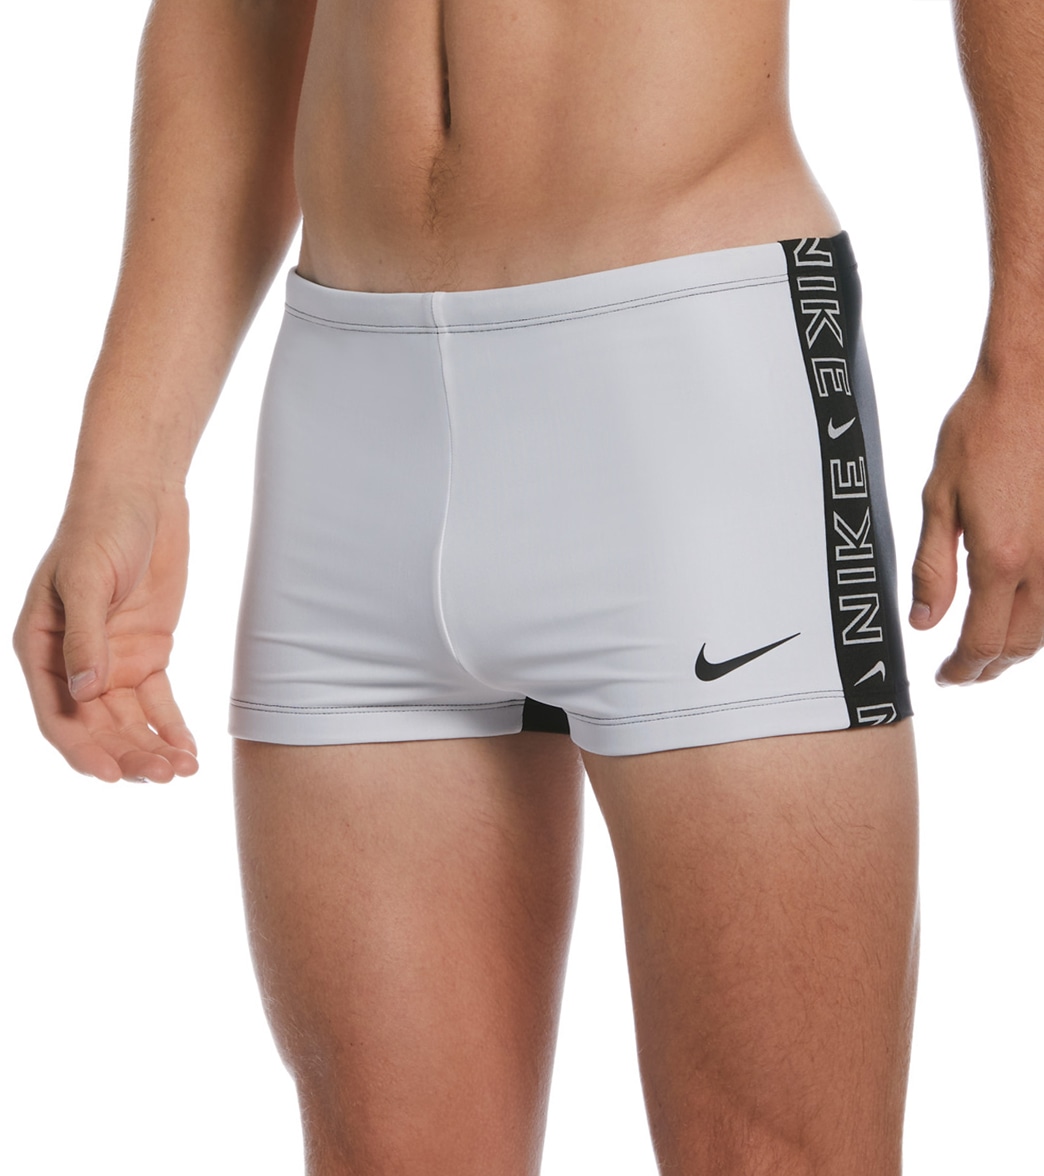 Nike Men's Logo Tape Square Leg Swimsuit - White Large - Swimoutlet.com